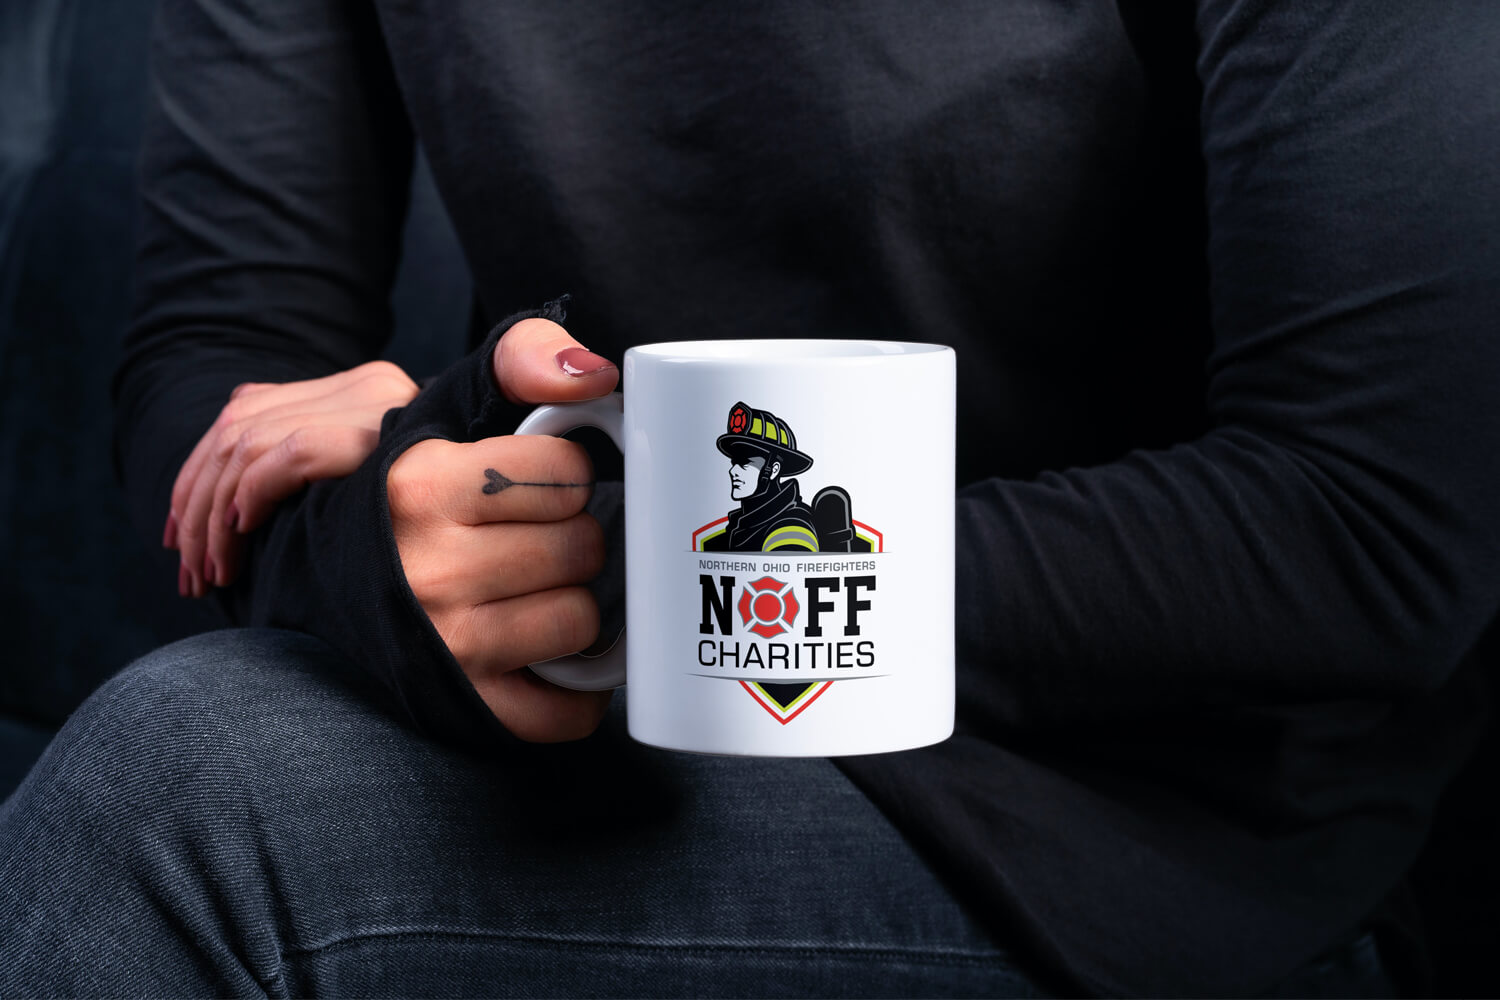 NOFF Charities Branding